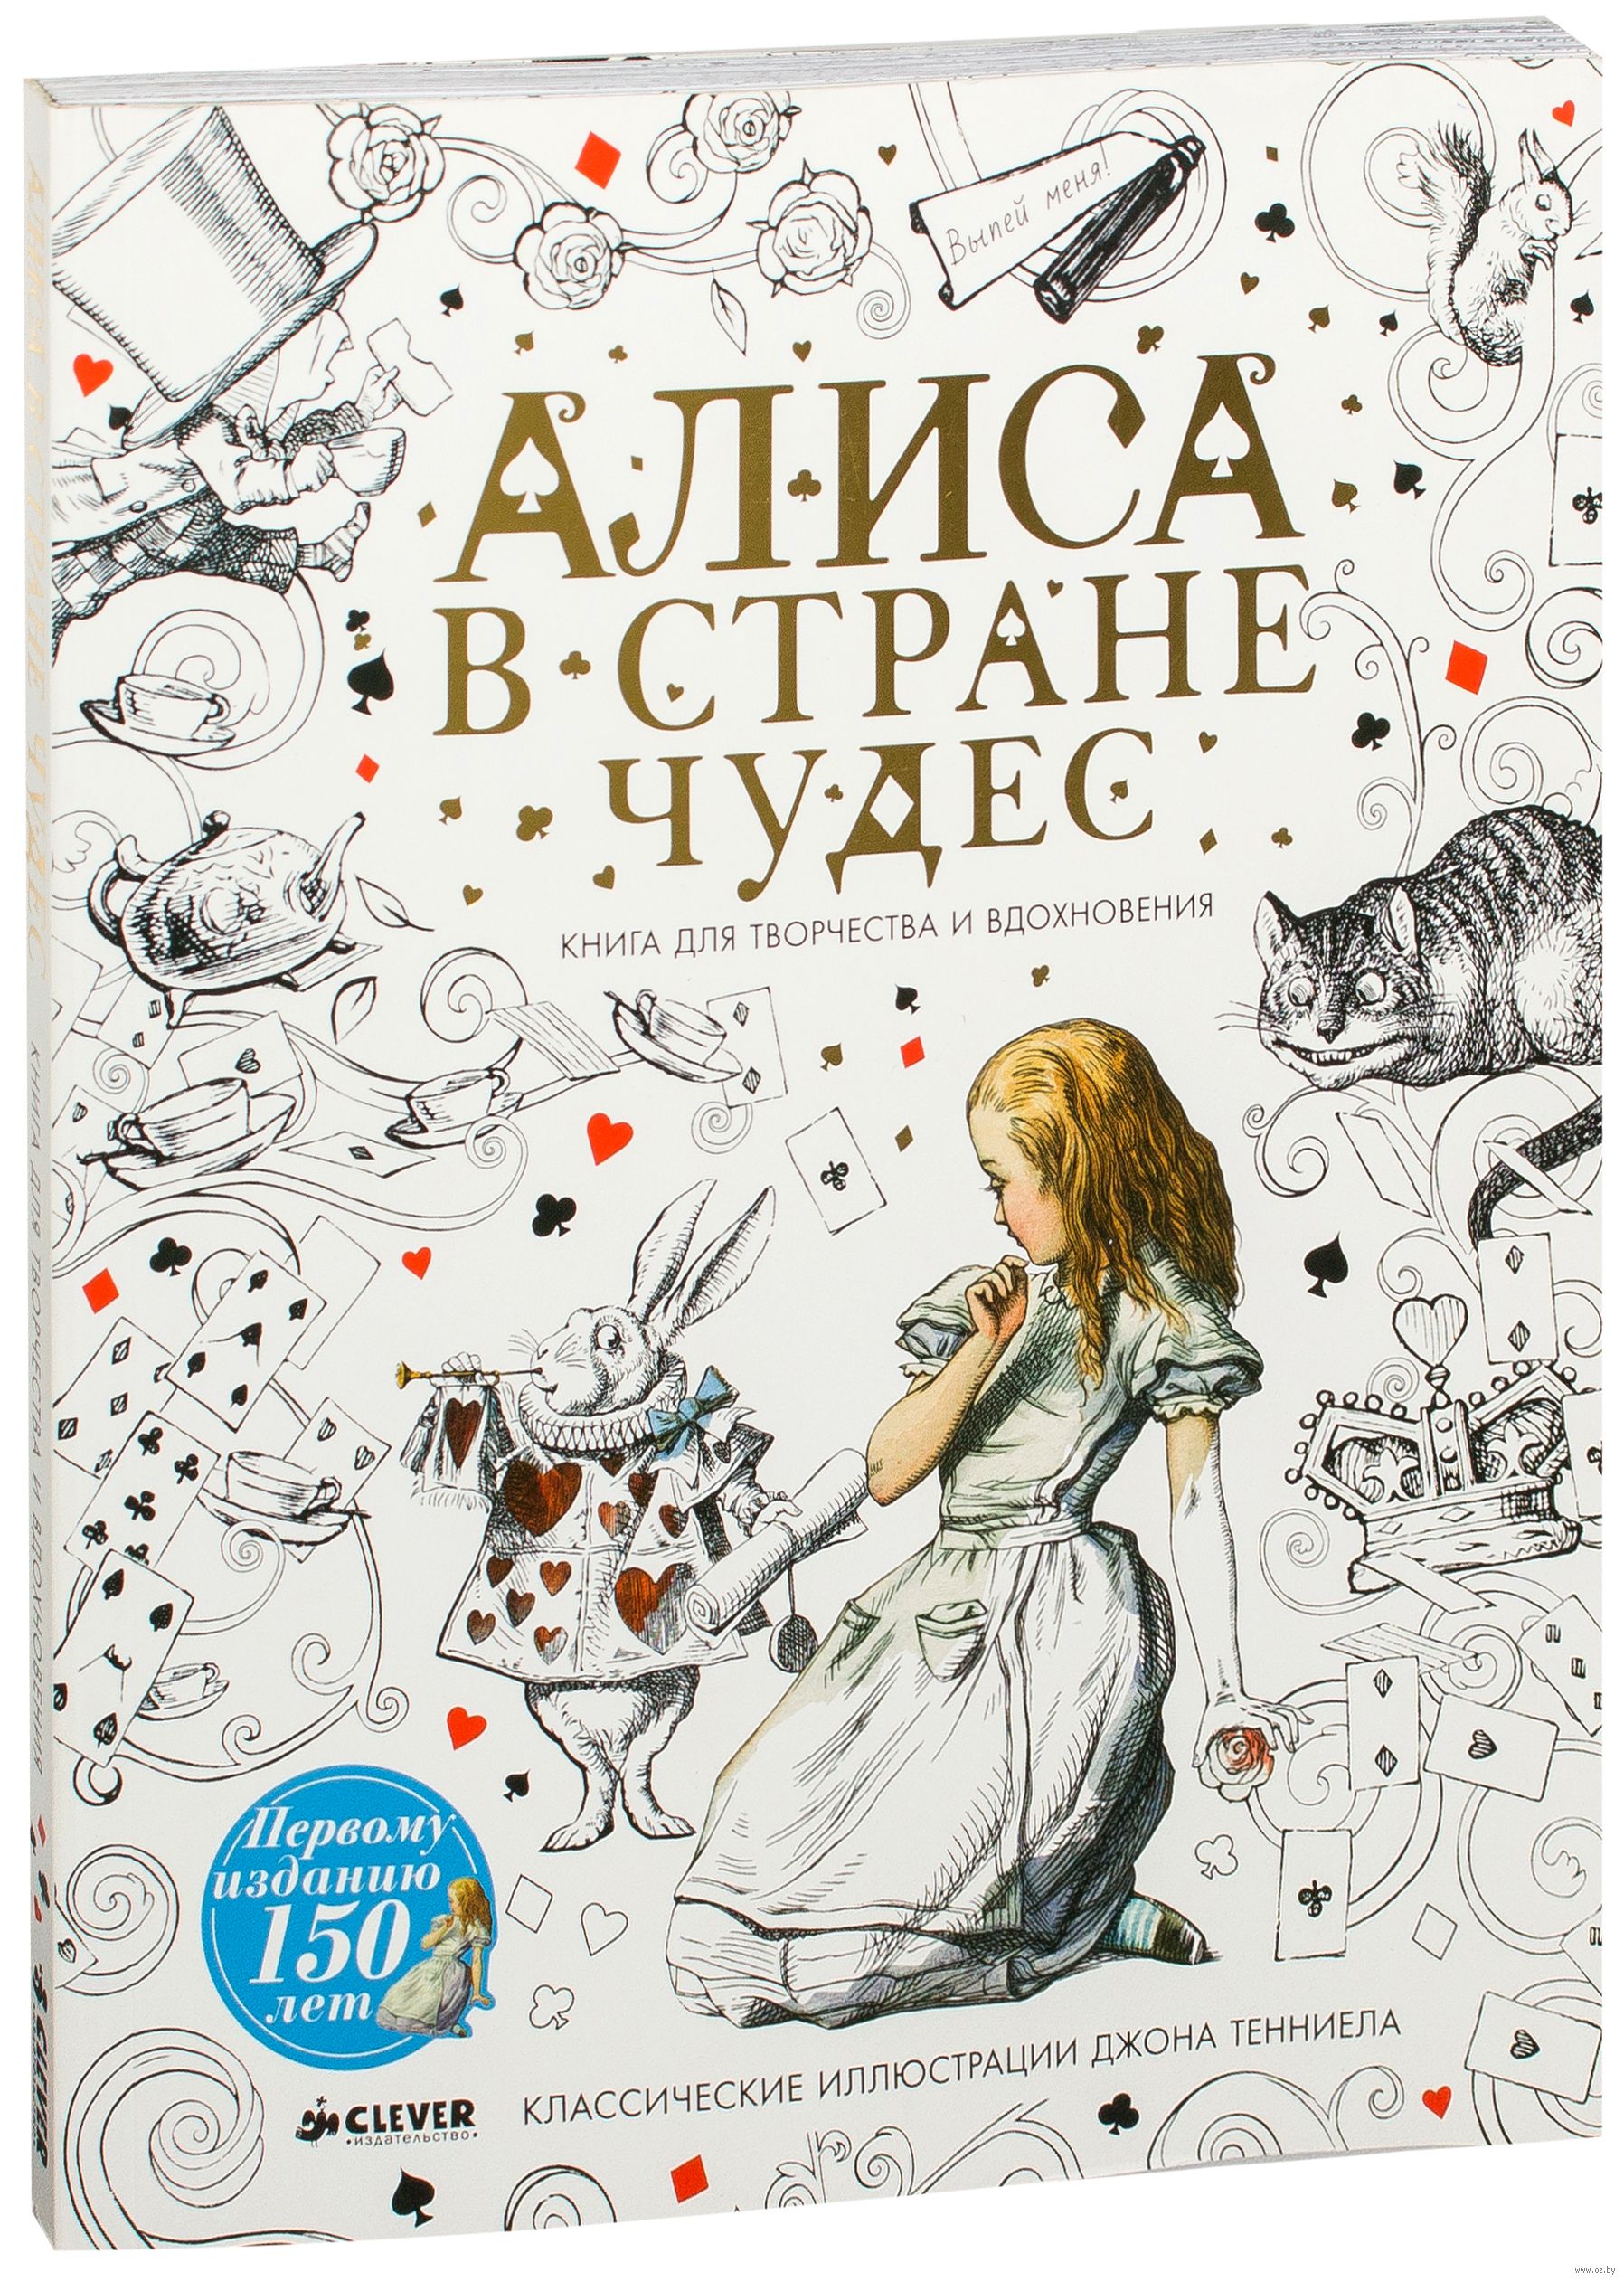 Алиса в стране чудес книга автор. Алиса в стране чудес обложка книги. Алиса в стране чудес книга для творчества. Алиса в стране чудес книга обложка красивая. Алиса в стране чудес иллюстрации обложка книги.